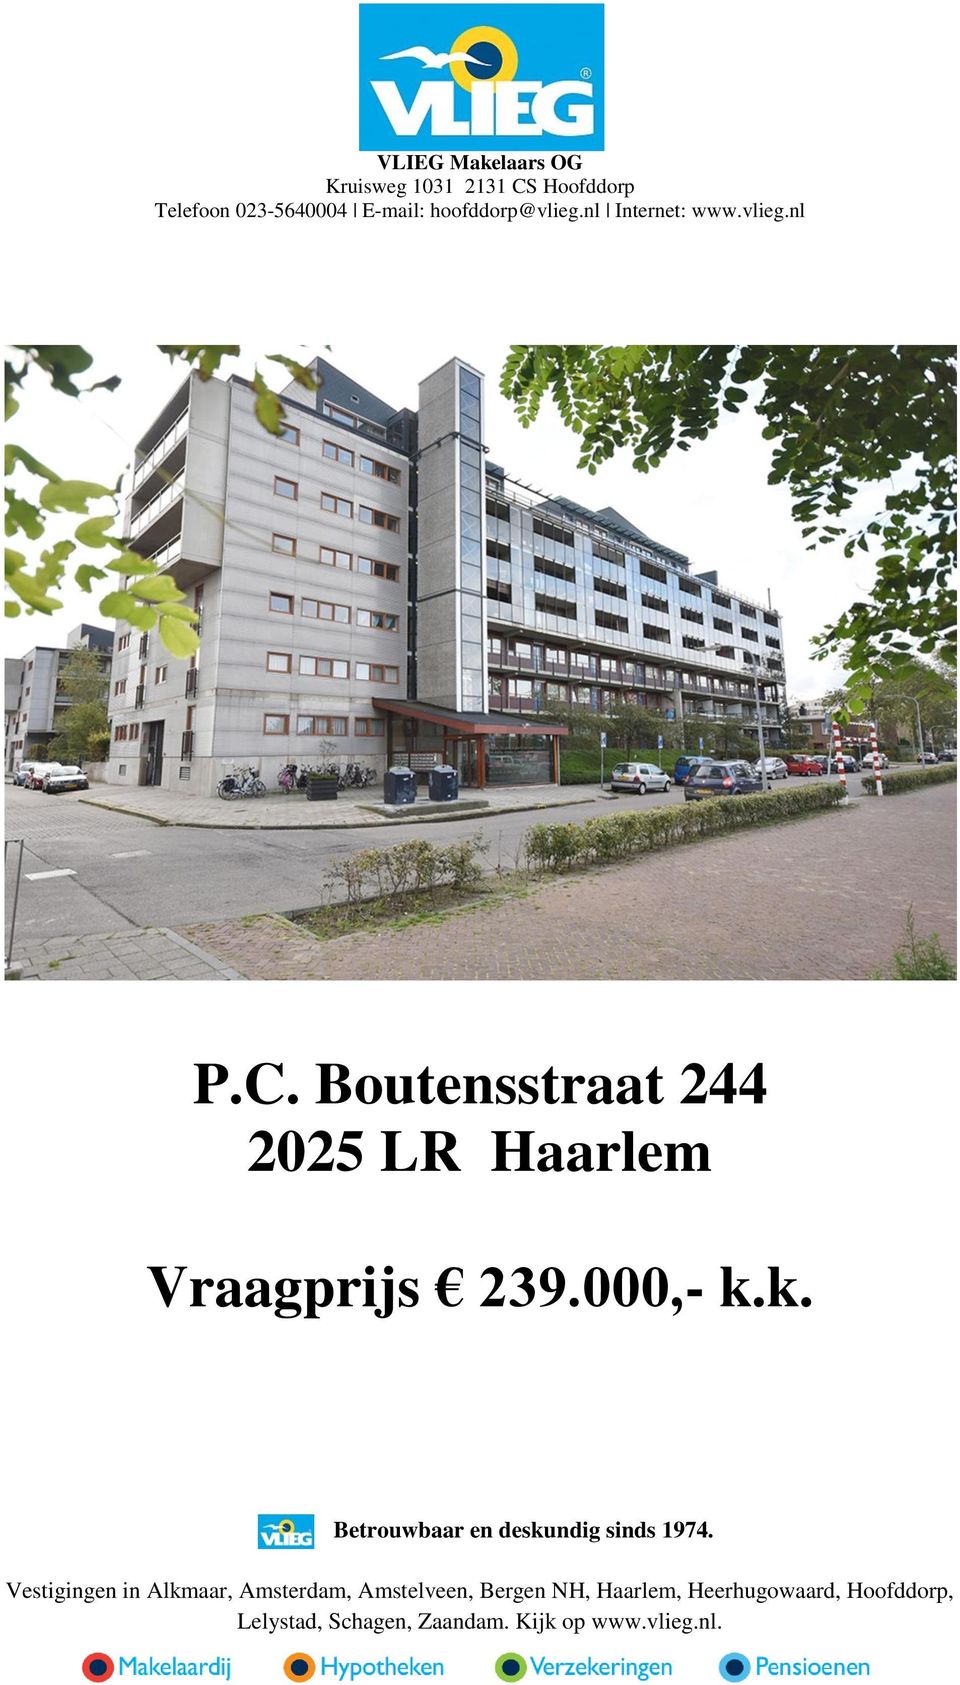 Boutensstraat 244 2025 LR Haarlem Vraagprijs 239.000, k.